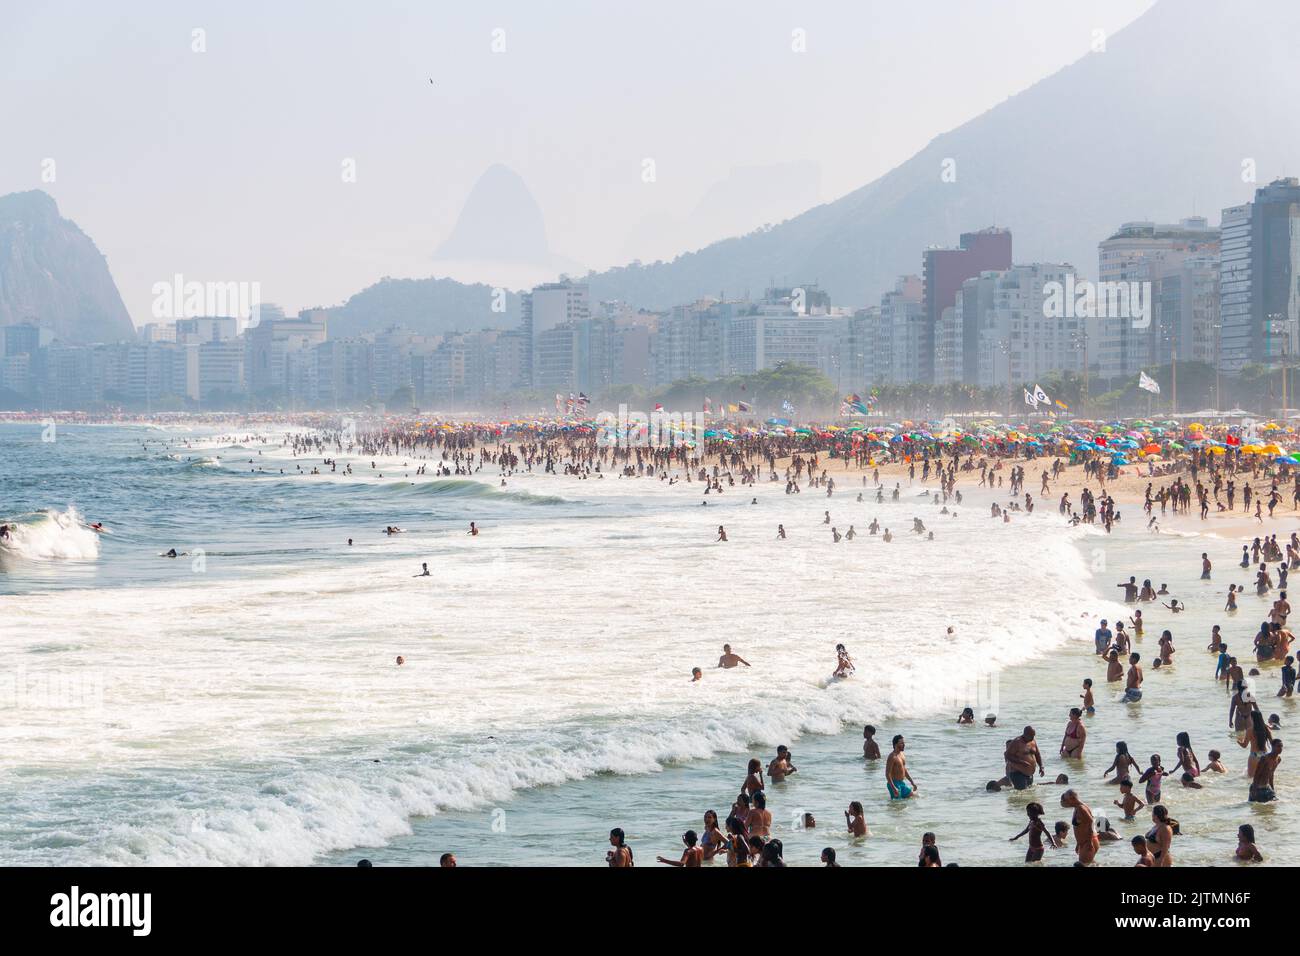 Plage de copacabana surpeuplée à Rio de Janeiro, Brésil - 6 septembre 2020 : plage de copacabana surpeuplée pendant la pandémie du coronavirus. Banque D'Images